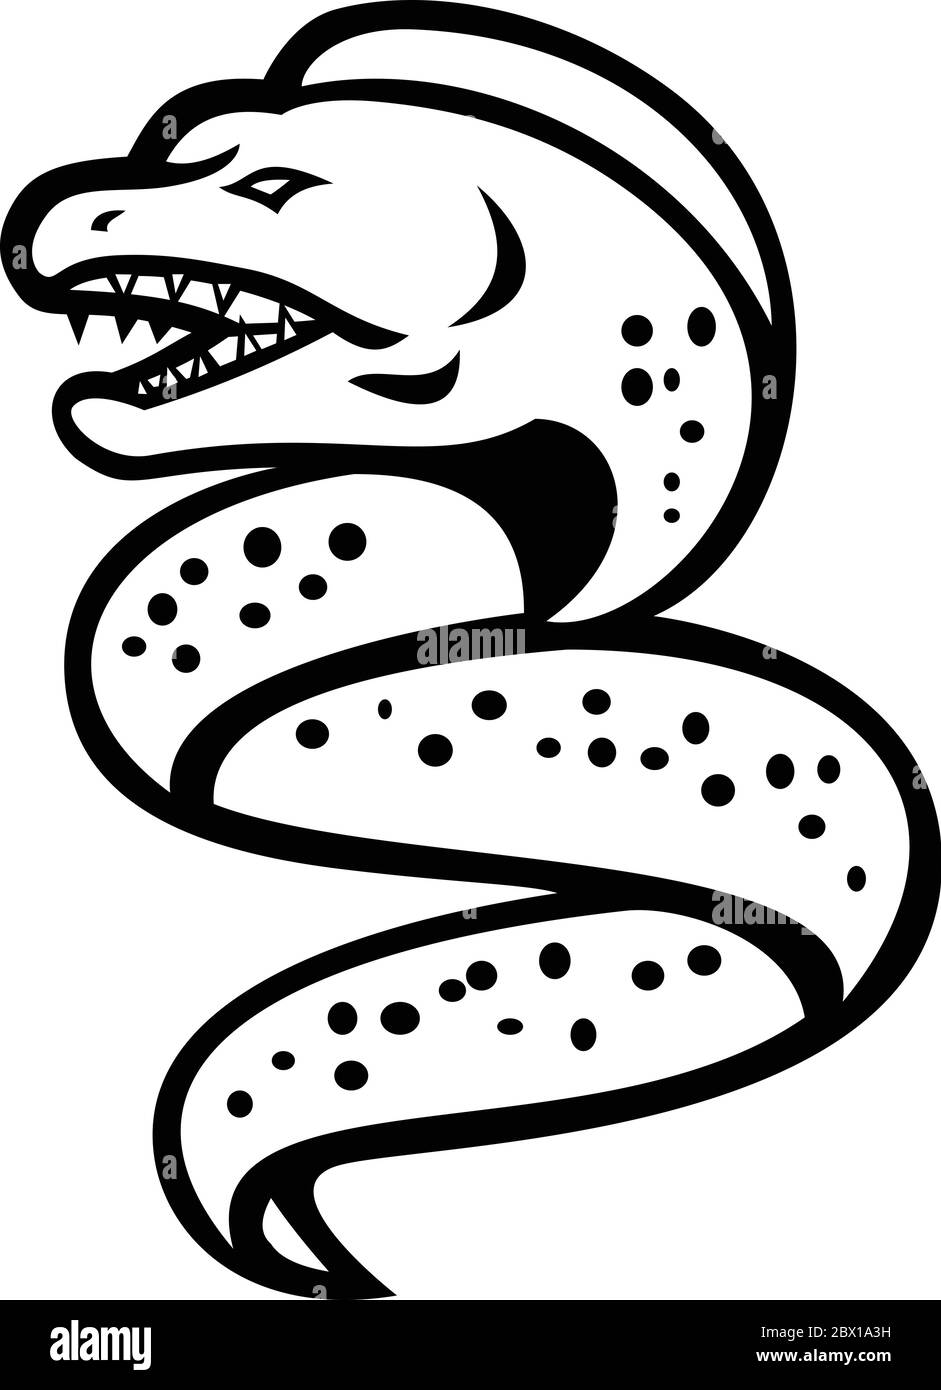 Icona Mascot illustrazione di un anguilla o muraenidi arrabbiato con mascella faringea che sale vista da un lato su sfondo isolato in nero retrò e W. Illustrazione Vettoriale